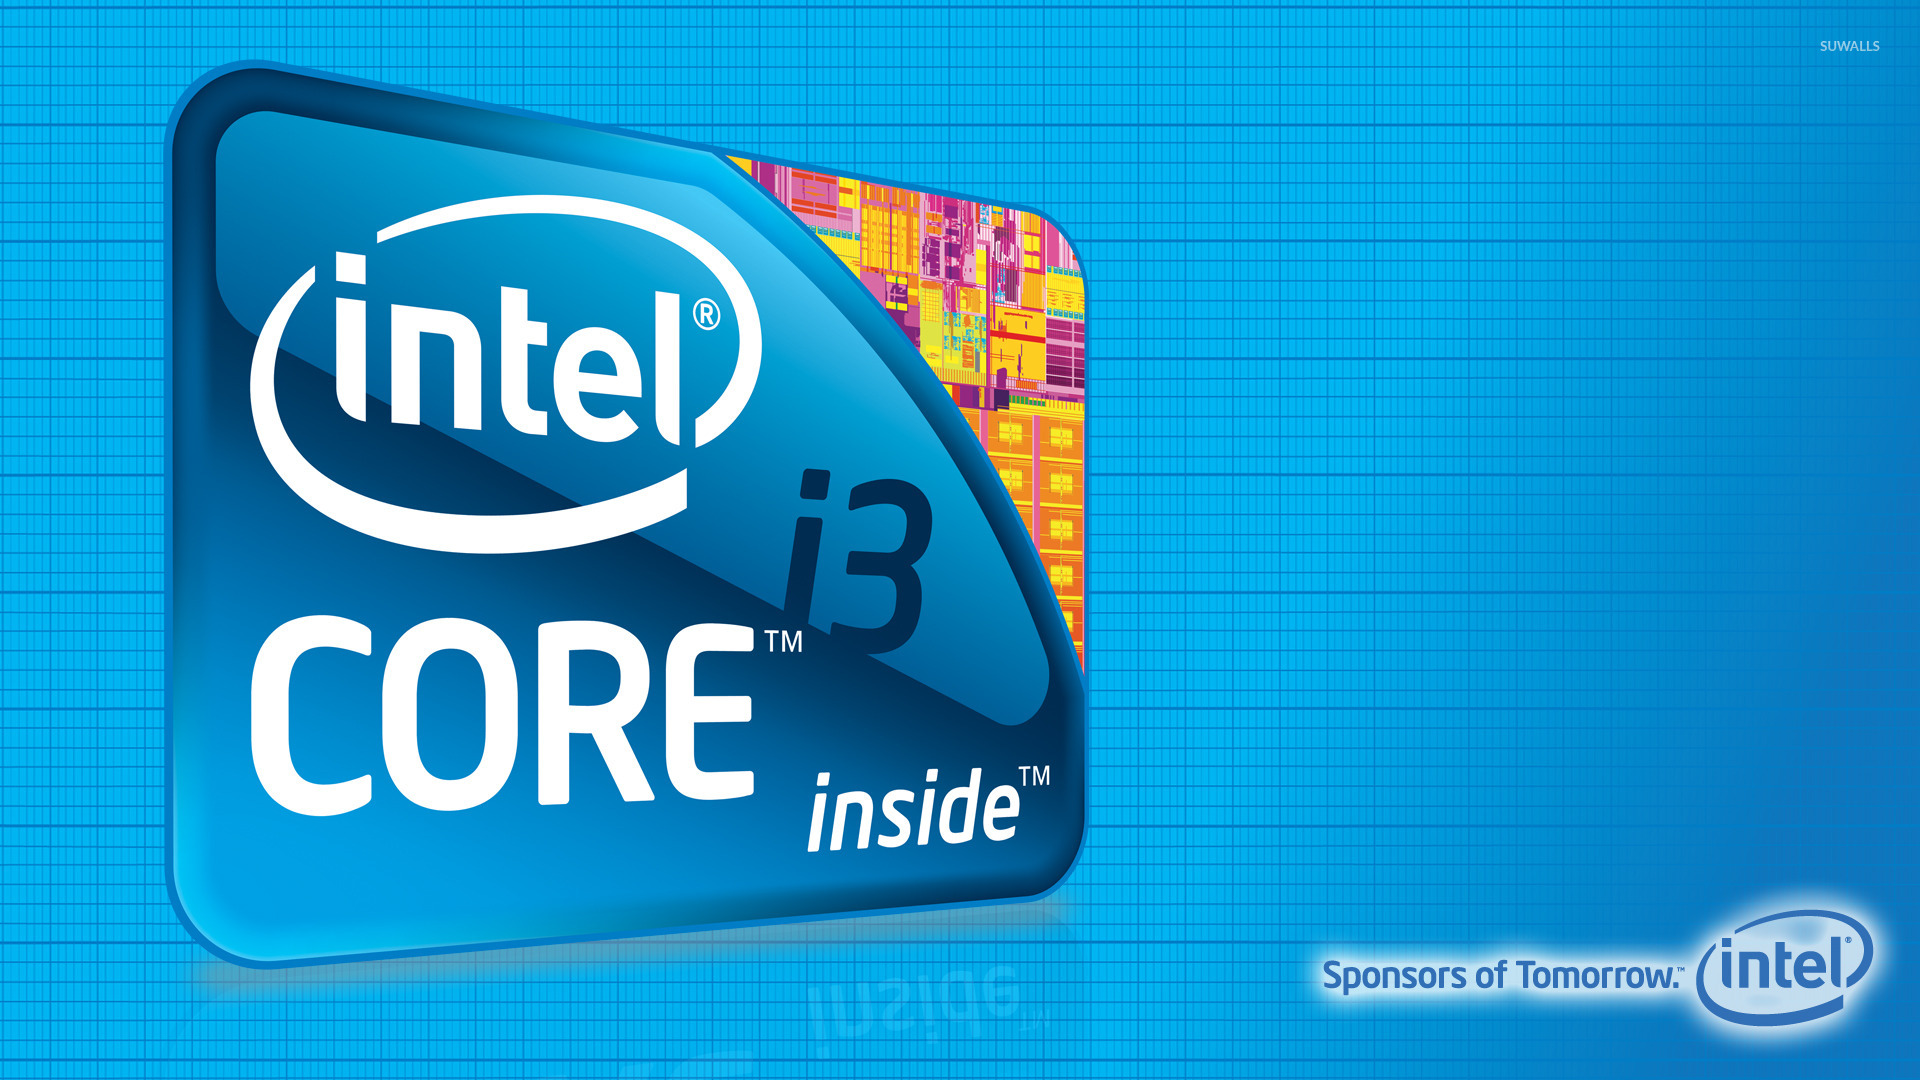 Intel Core I3 Hd - 1920x1080 Wallpaper 